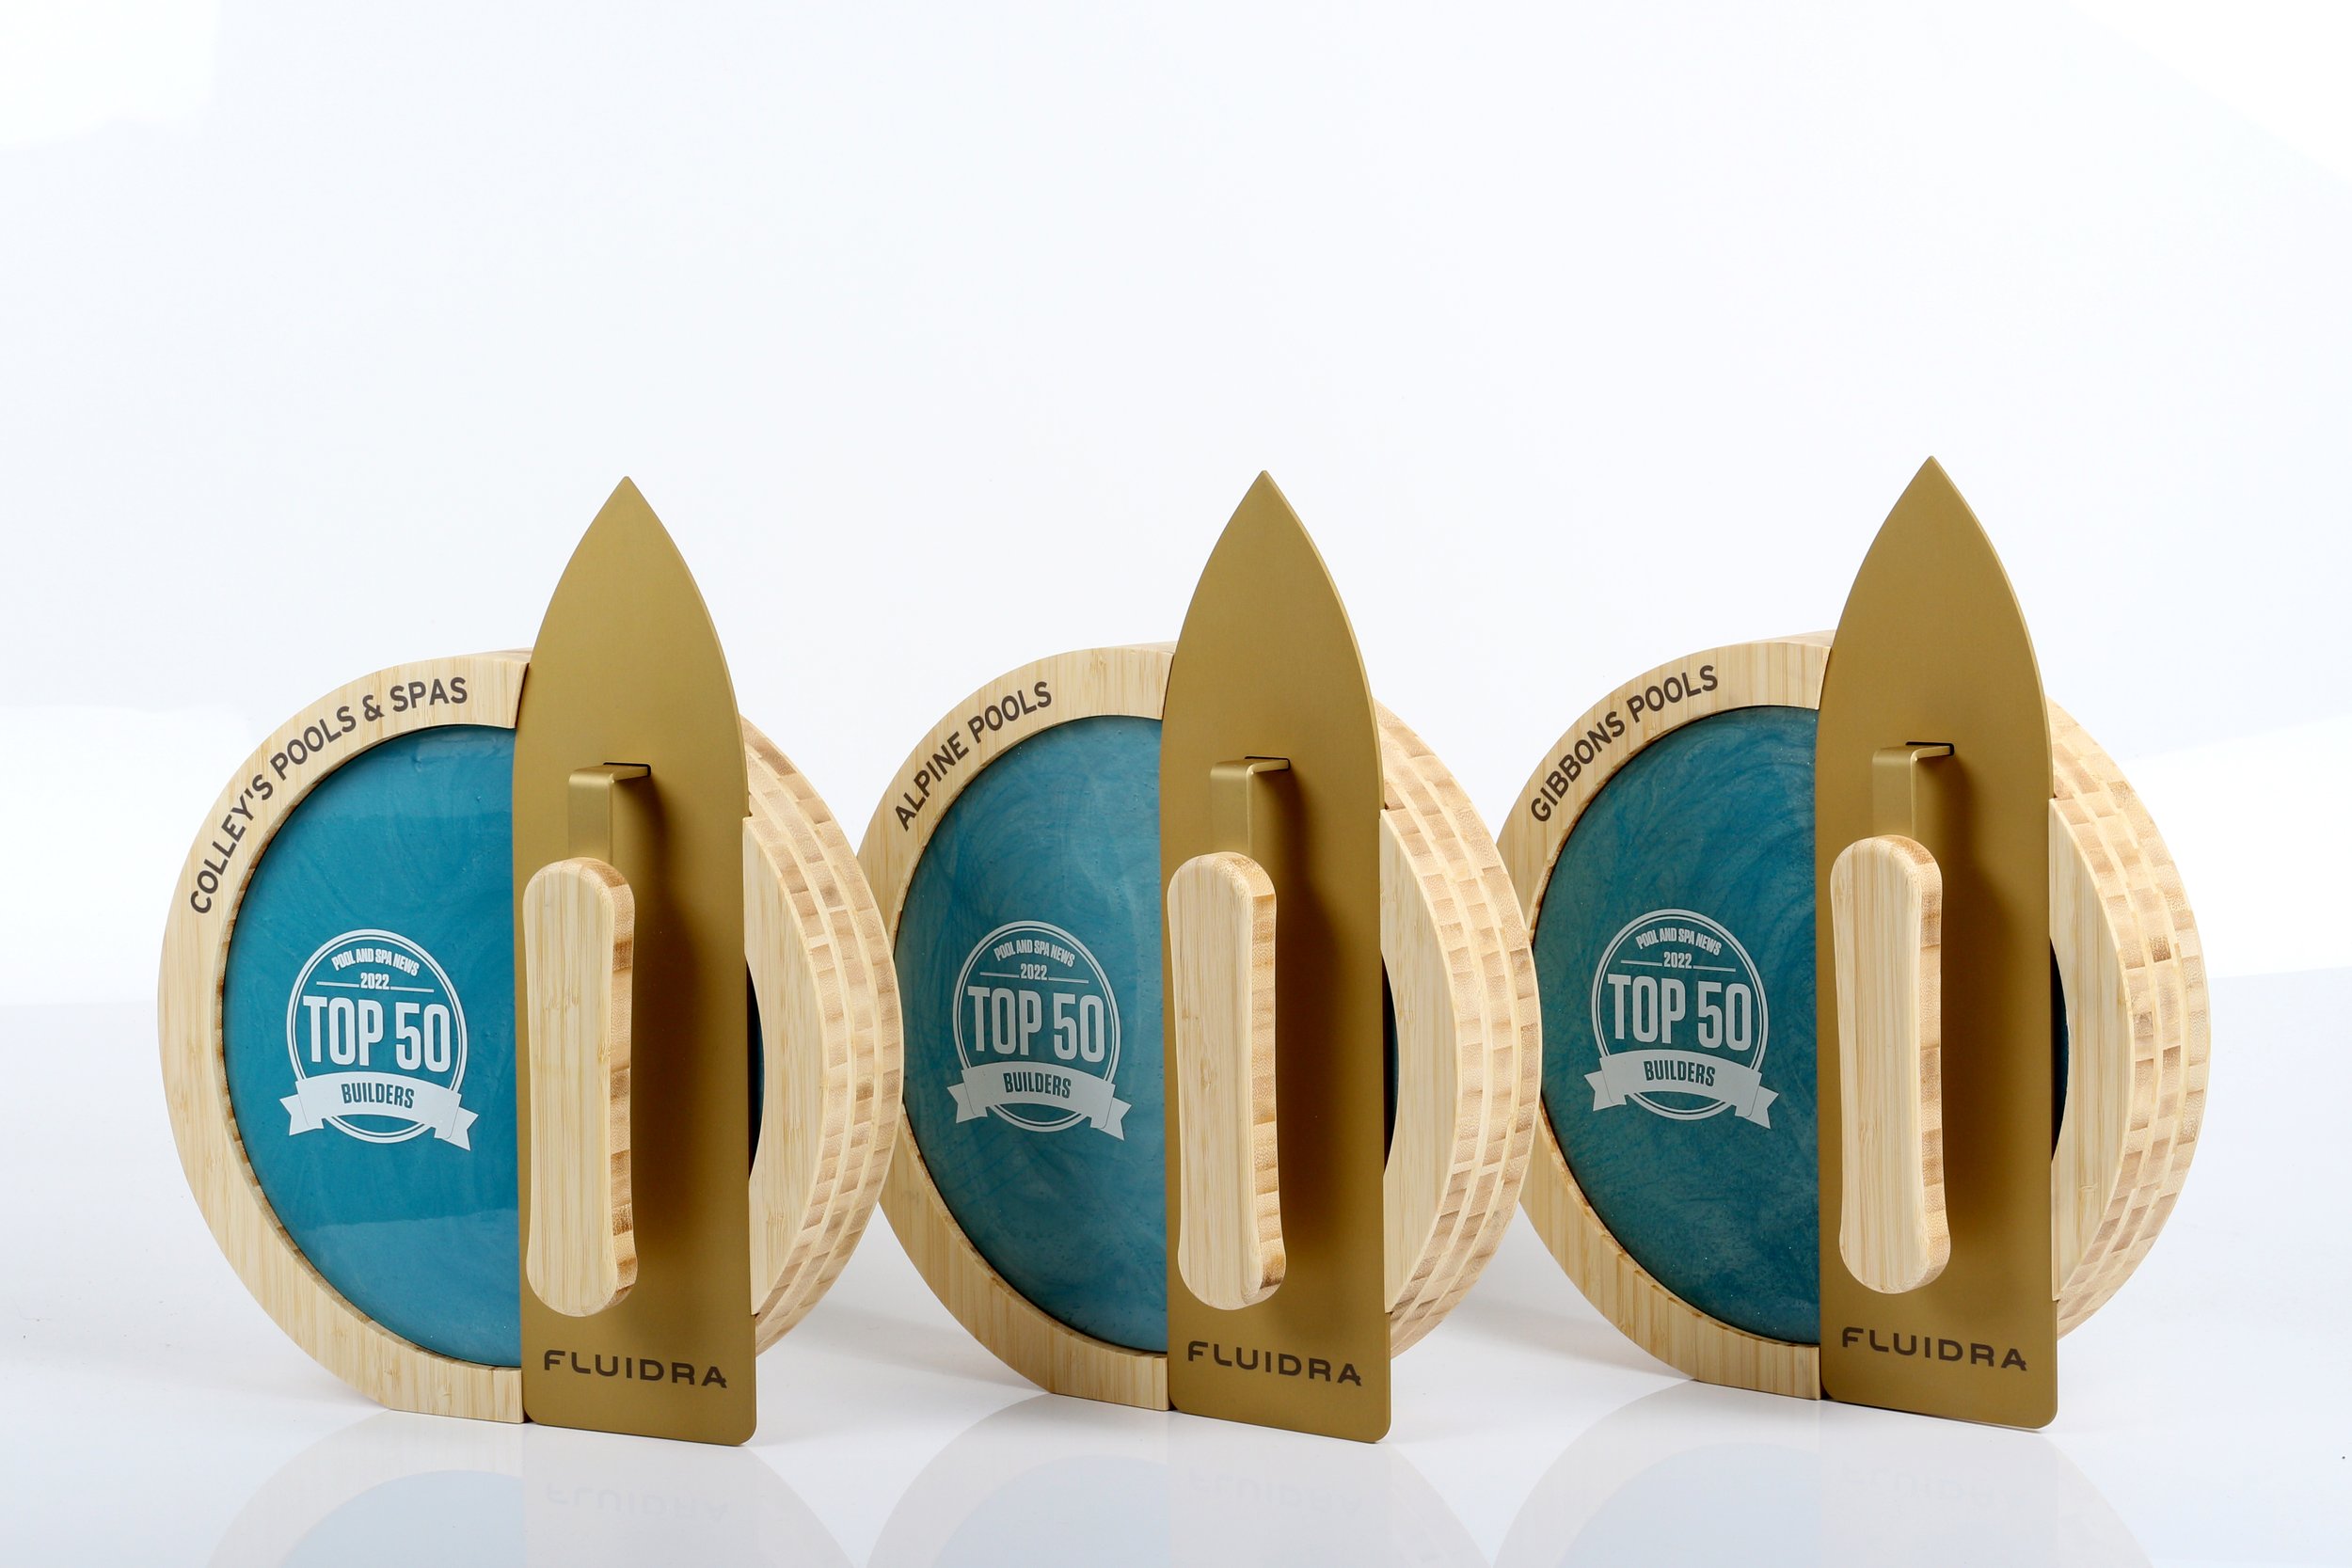 Unique awards for Fluidra